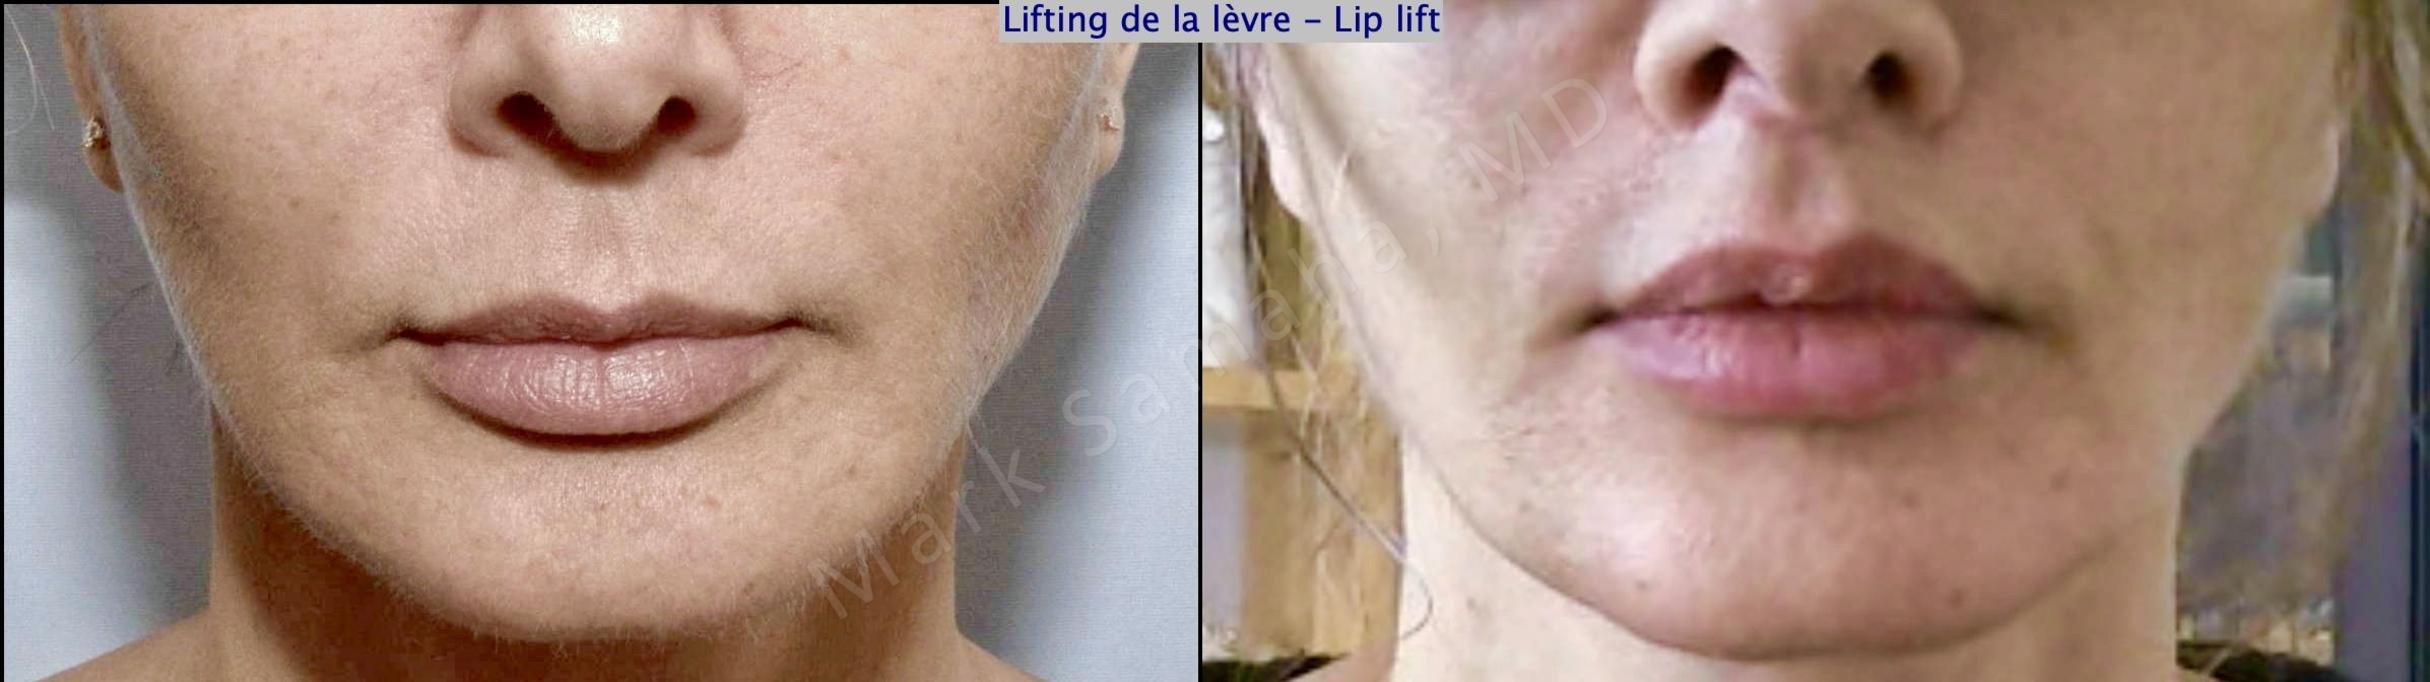 Before & After Lip Lift / Lifting de la lèvre supérieure Case 178 Front View in Mount Royal, QC